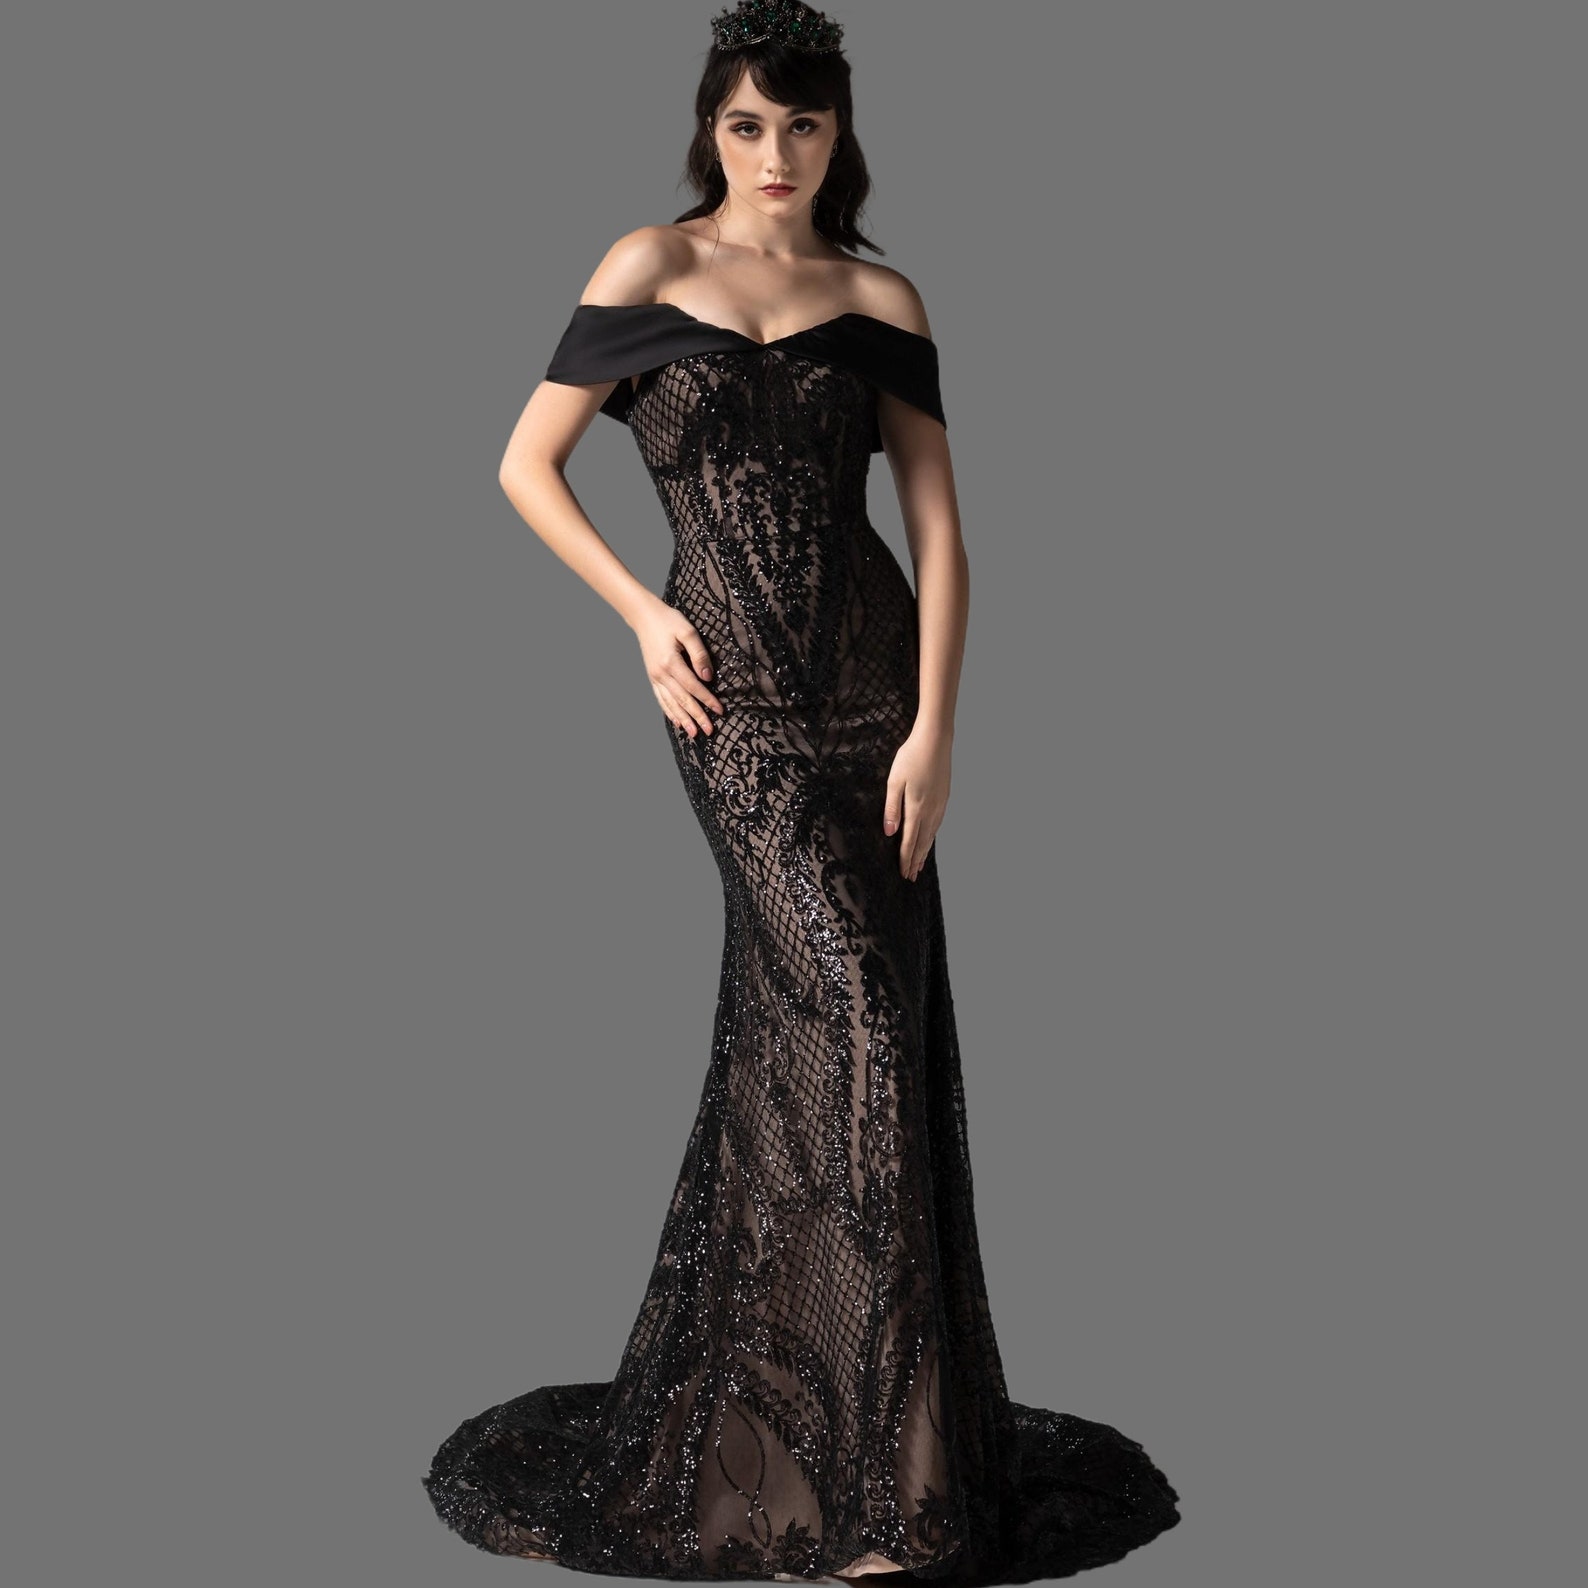 Black Satin Bridal Dress With Detachable Skirt off Shoulder - Etsy